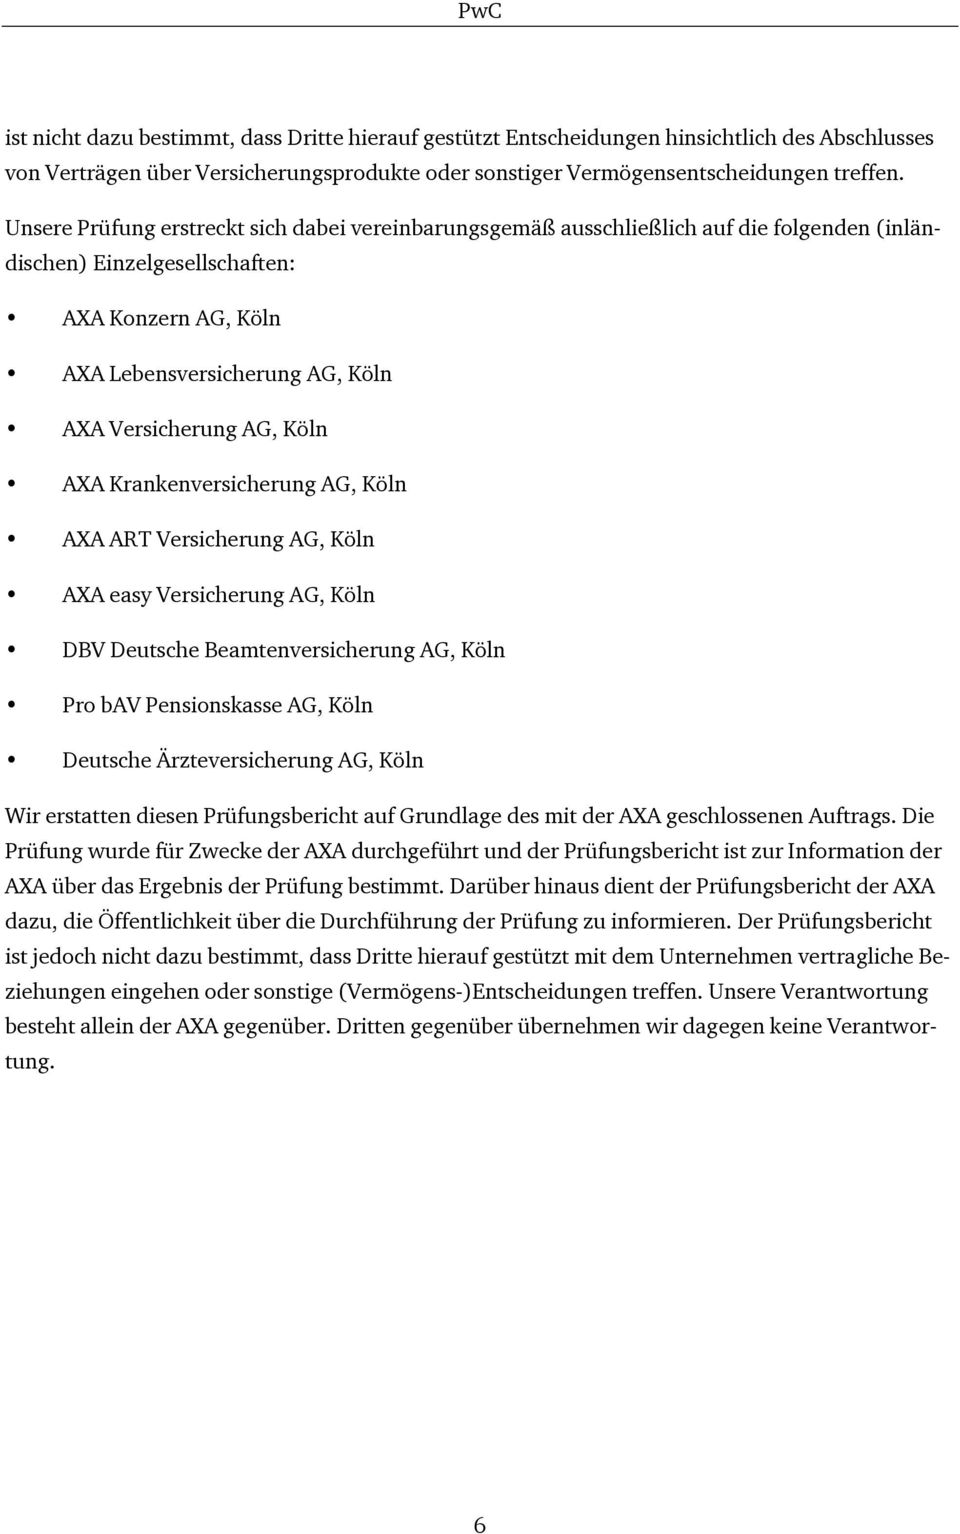 Köln AXA Krankenversicherung AG, Köln AXA ART Versicherung AG, Köln AXA easy Versicherung AG, Köln DBV Deutsche Beamtenversicherung AG, Köln Pro bav Pensionskasse AG, Köln Deutsche Ärzteversicherung